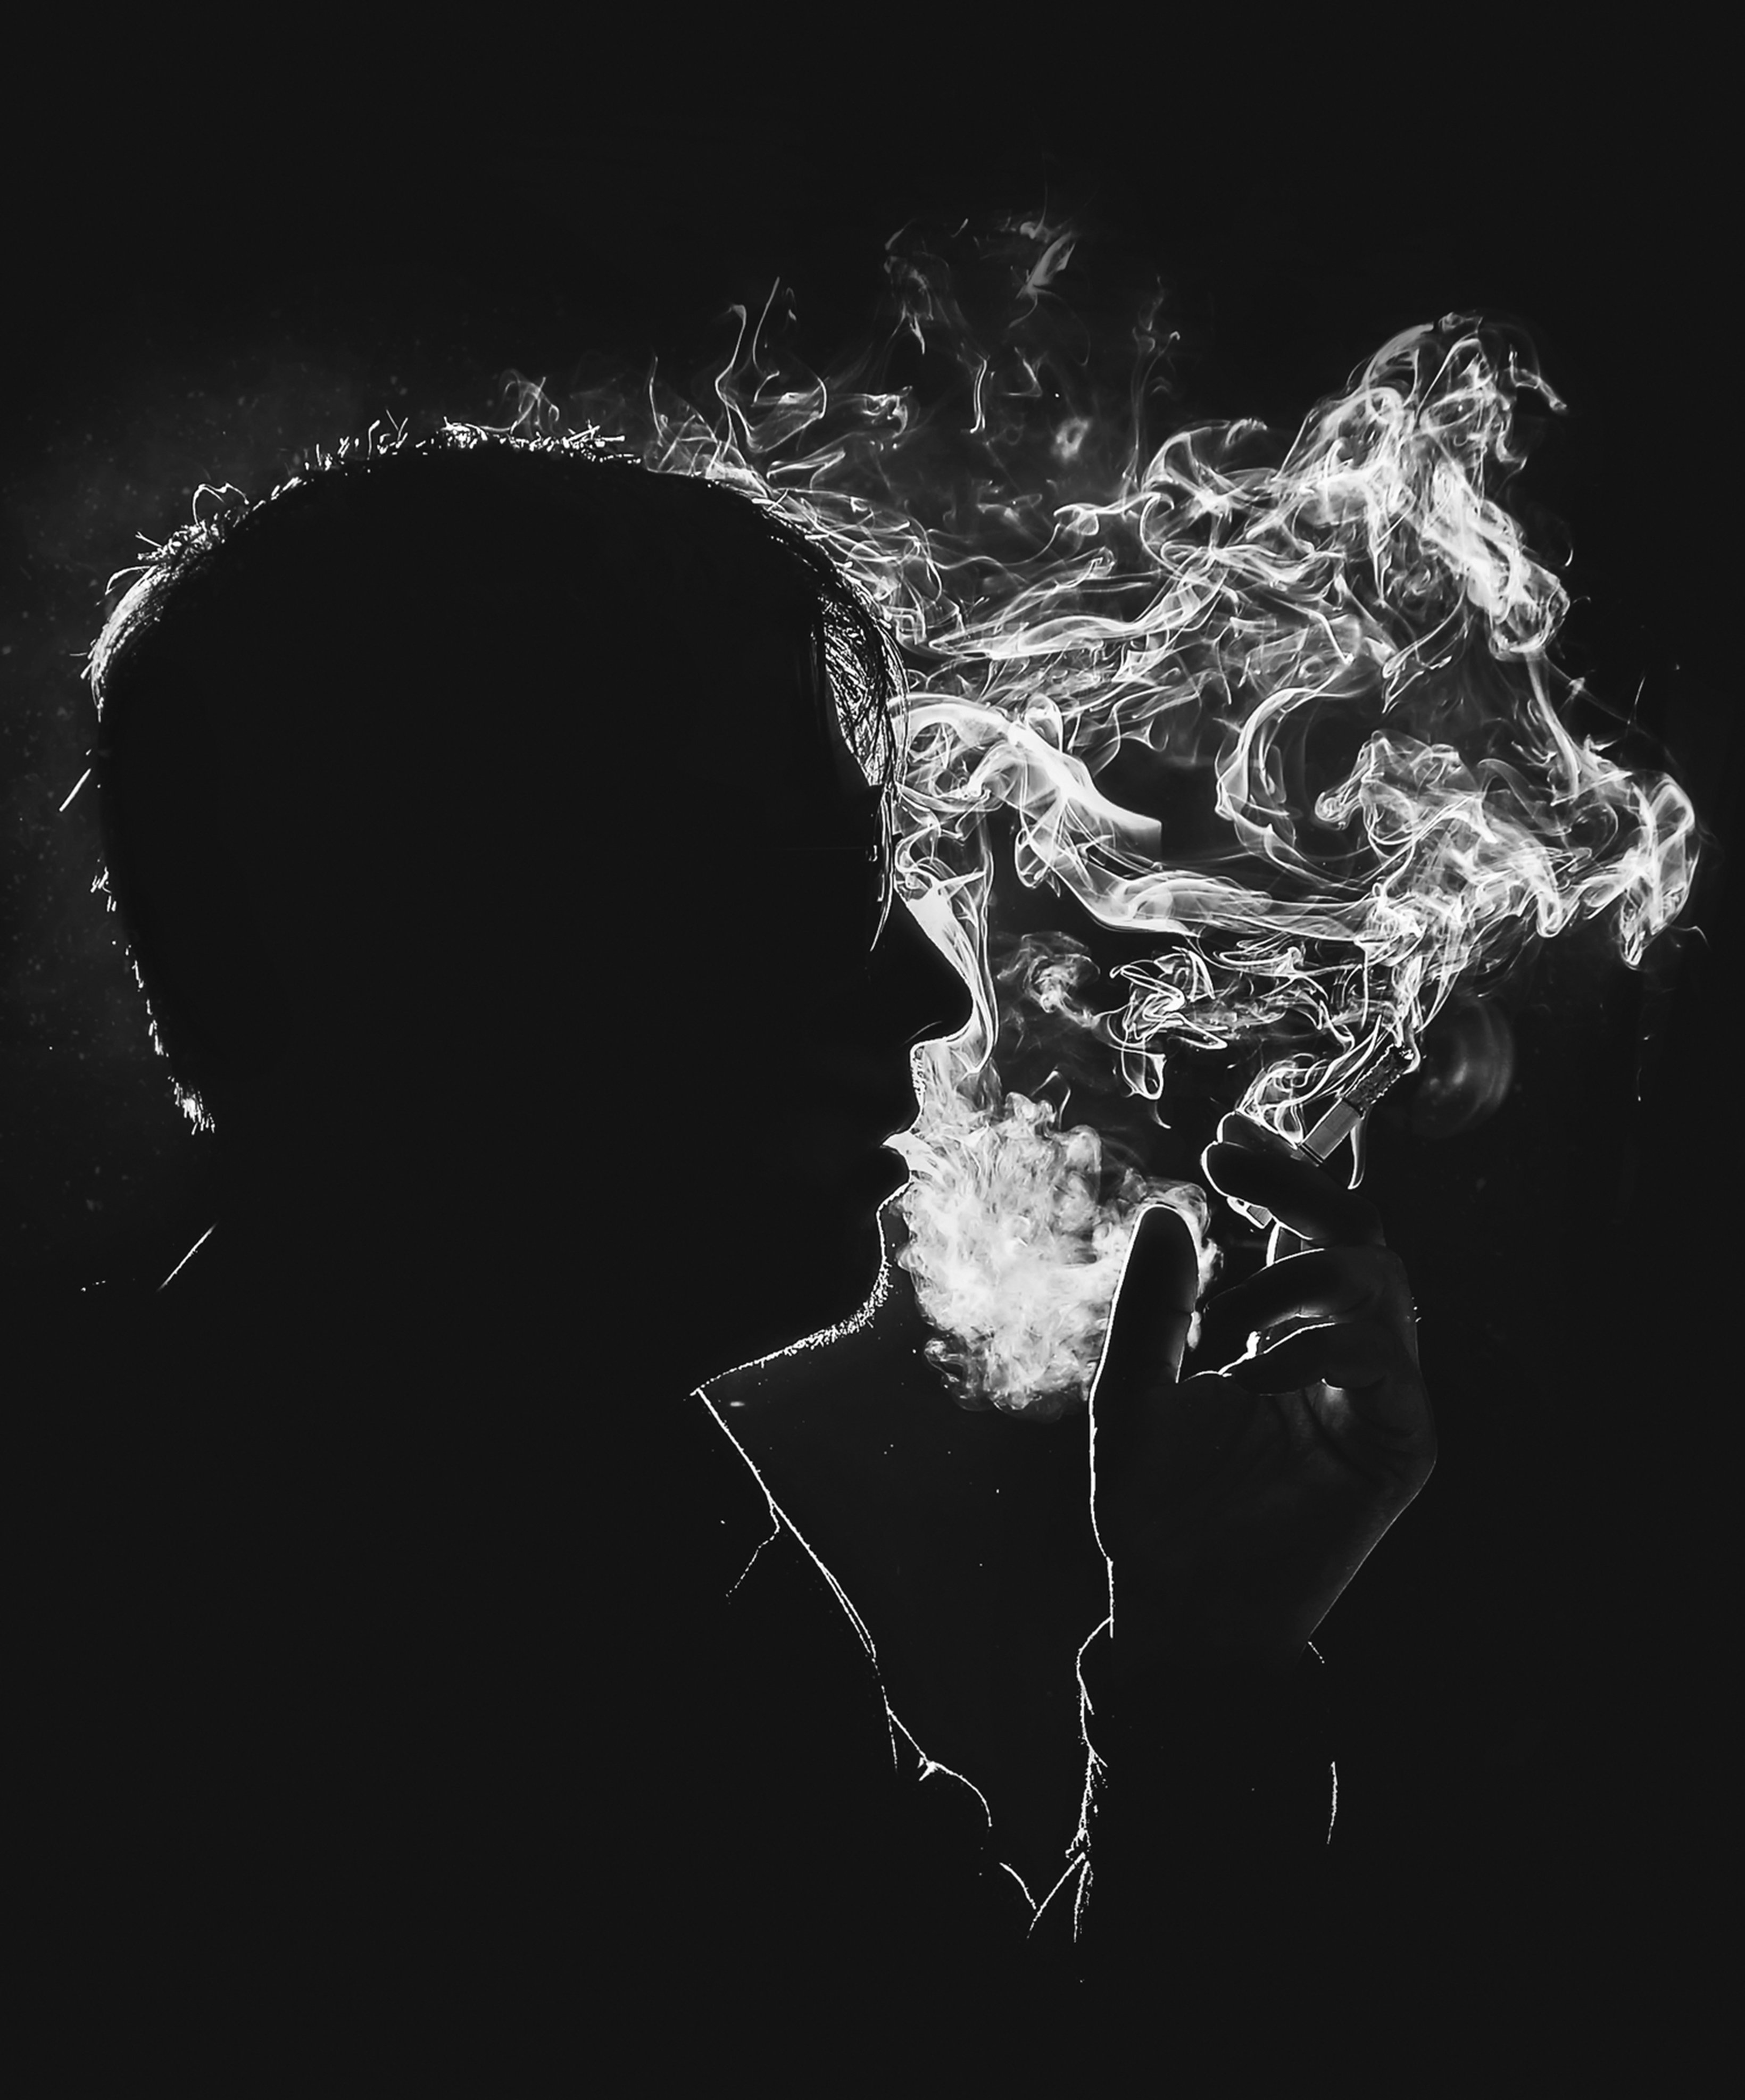 курение,дым,сигарета,мысли,тишина,безмолвие,вред,чёрно-белый, движение, Владимир Володин